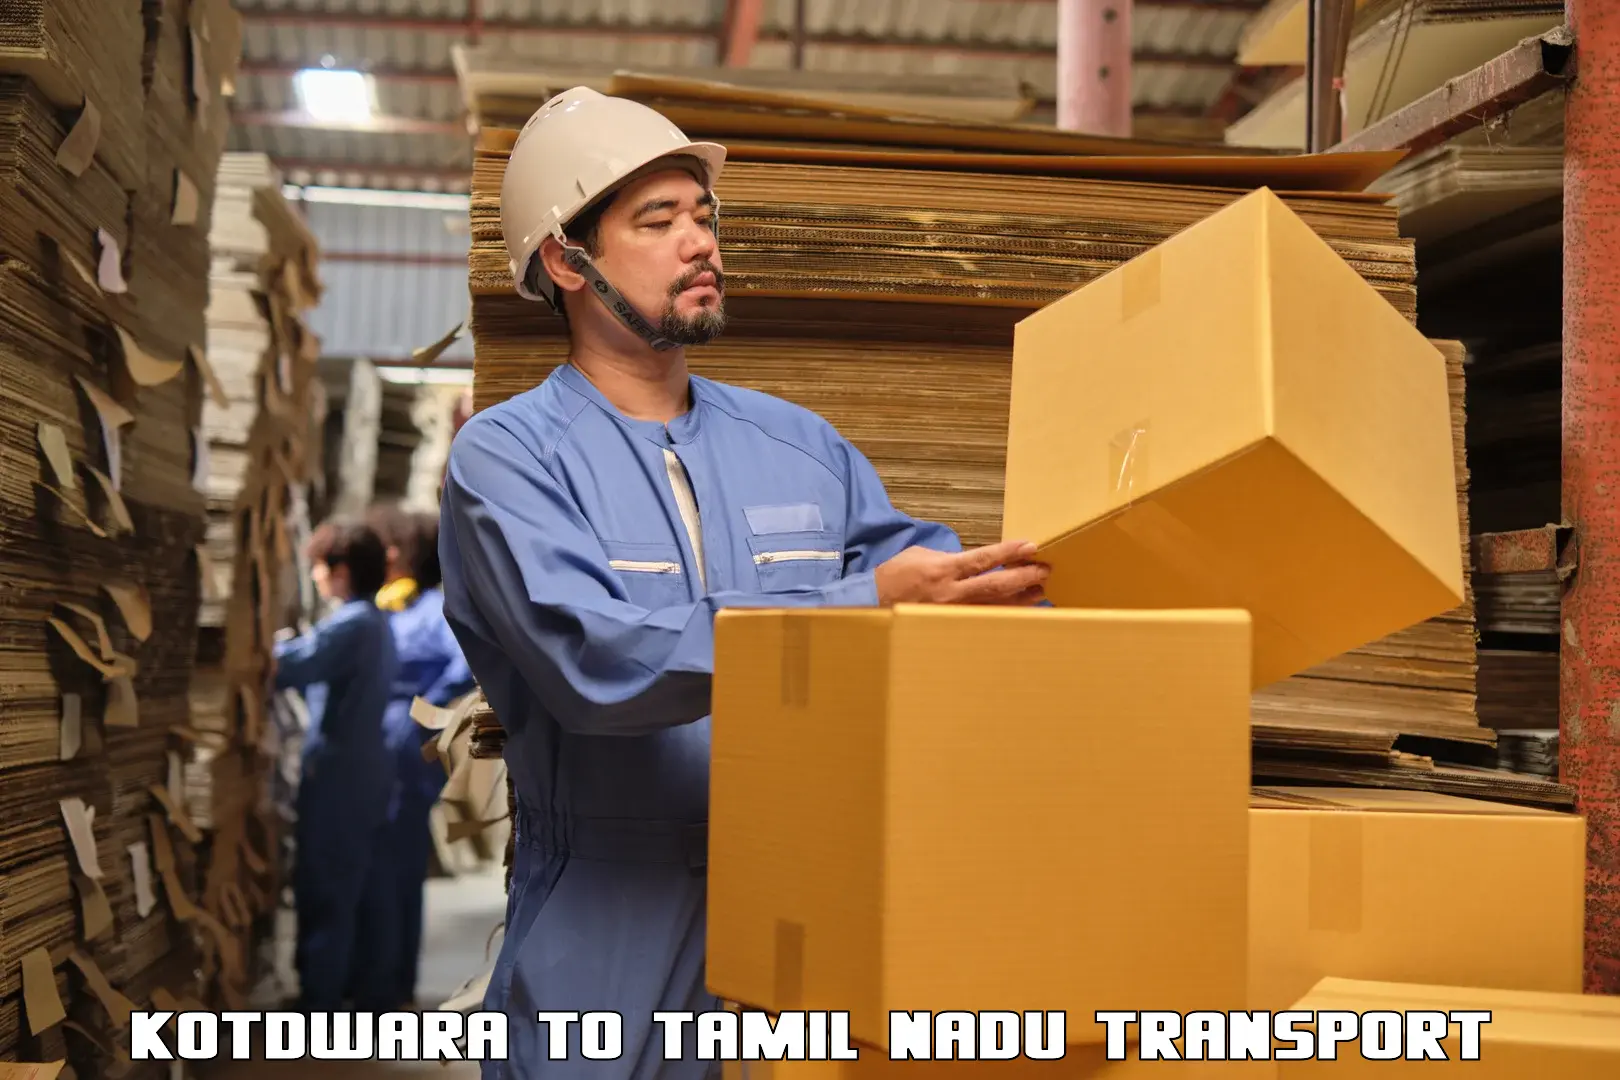 Express transport services Kotdwara to Tamil Nadu